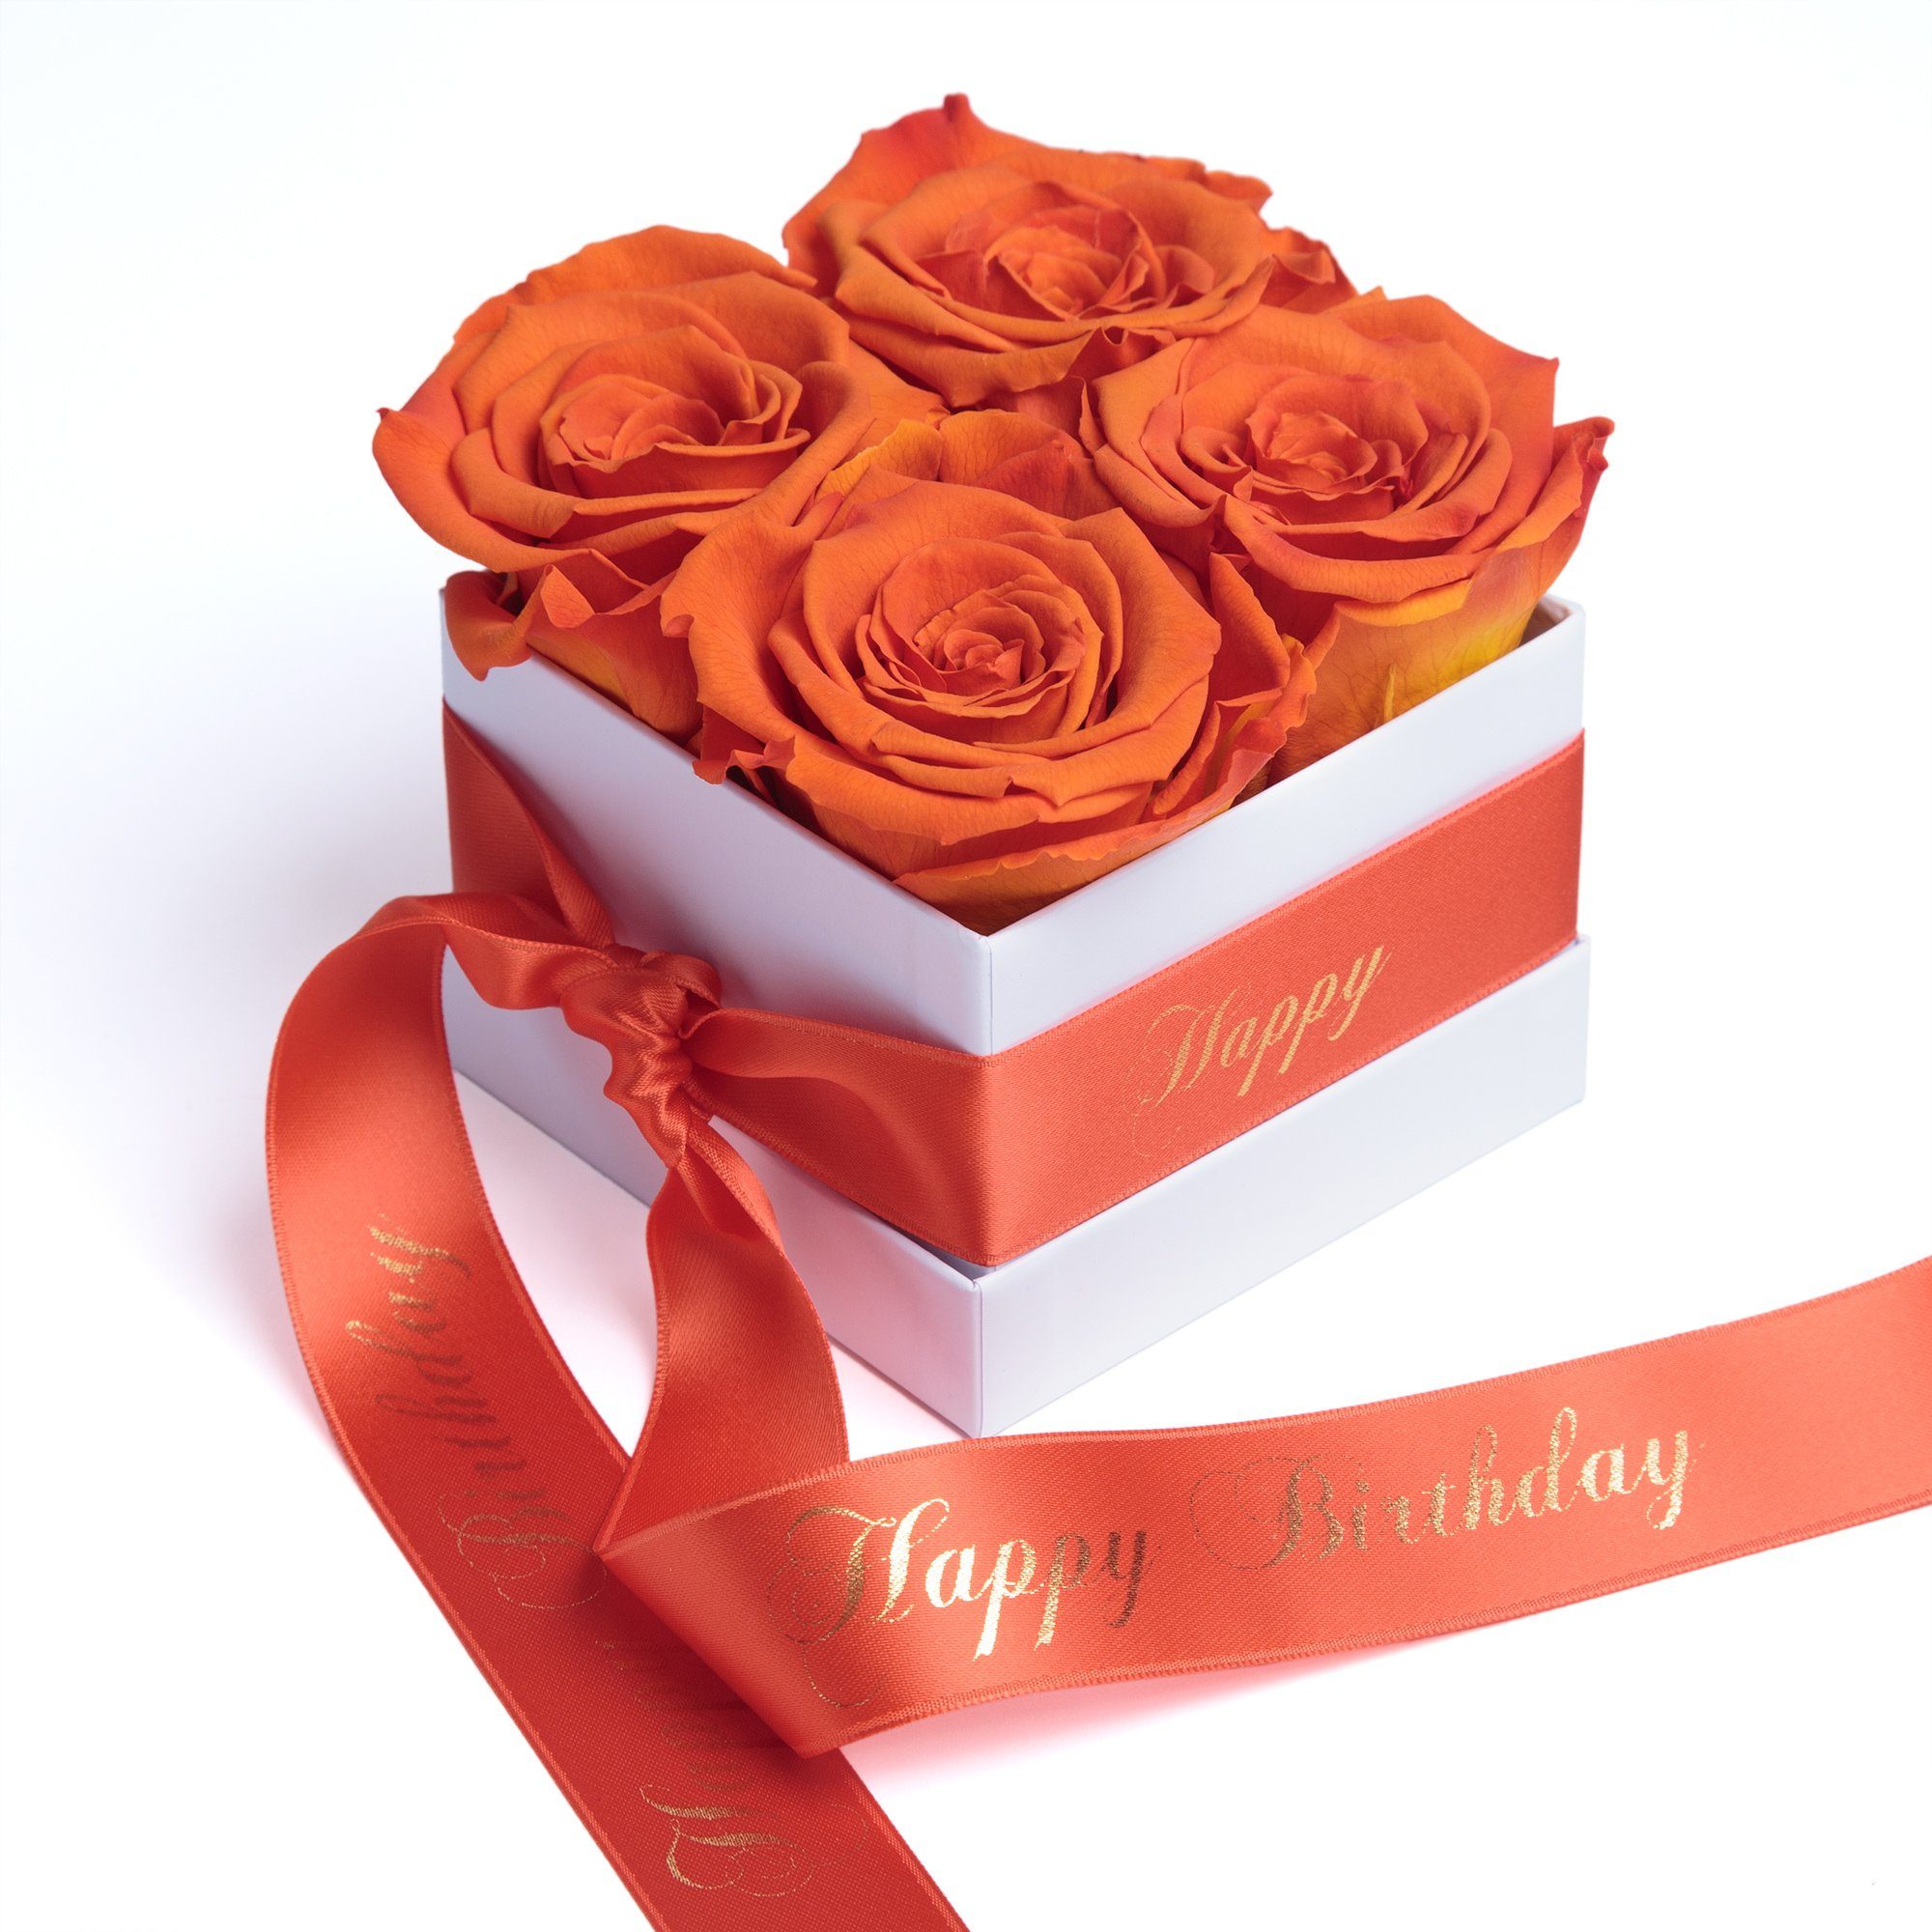 Kunstblume Infinity Rosenbox Happy Birthday Geschenk Geburtstag für Frauen Rose, ROSEMARIE SCHULZ Heidelberg, Höhe 8.5 cm, echte Rosen haltbar 3 Jahre